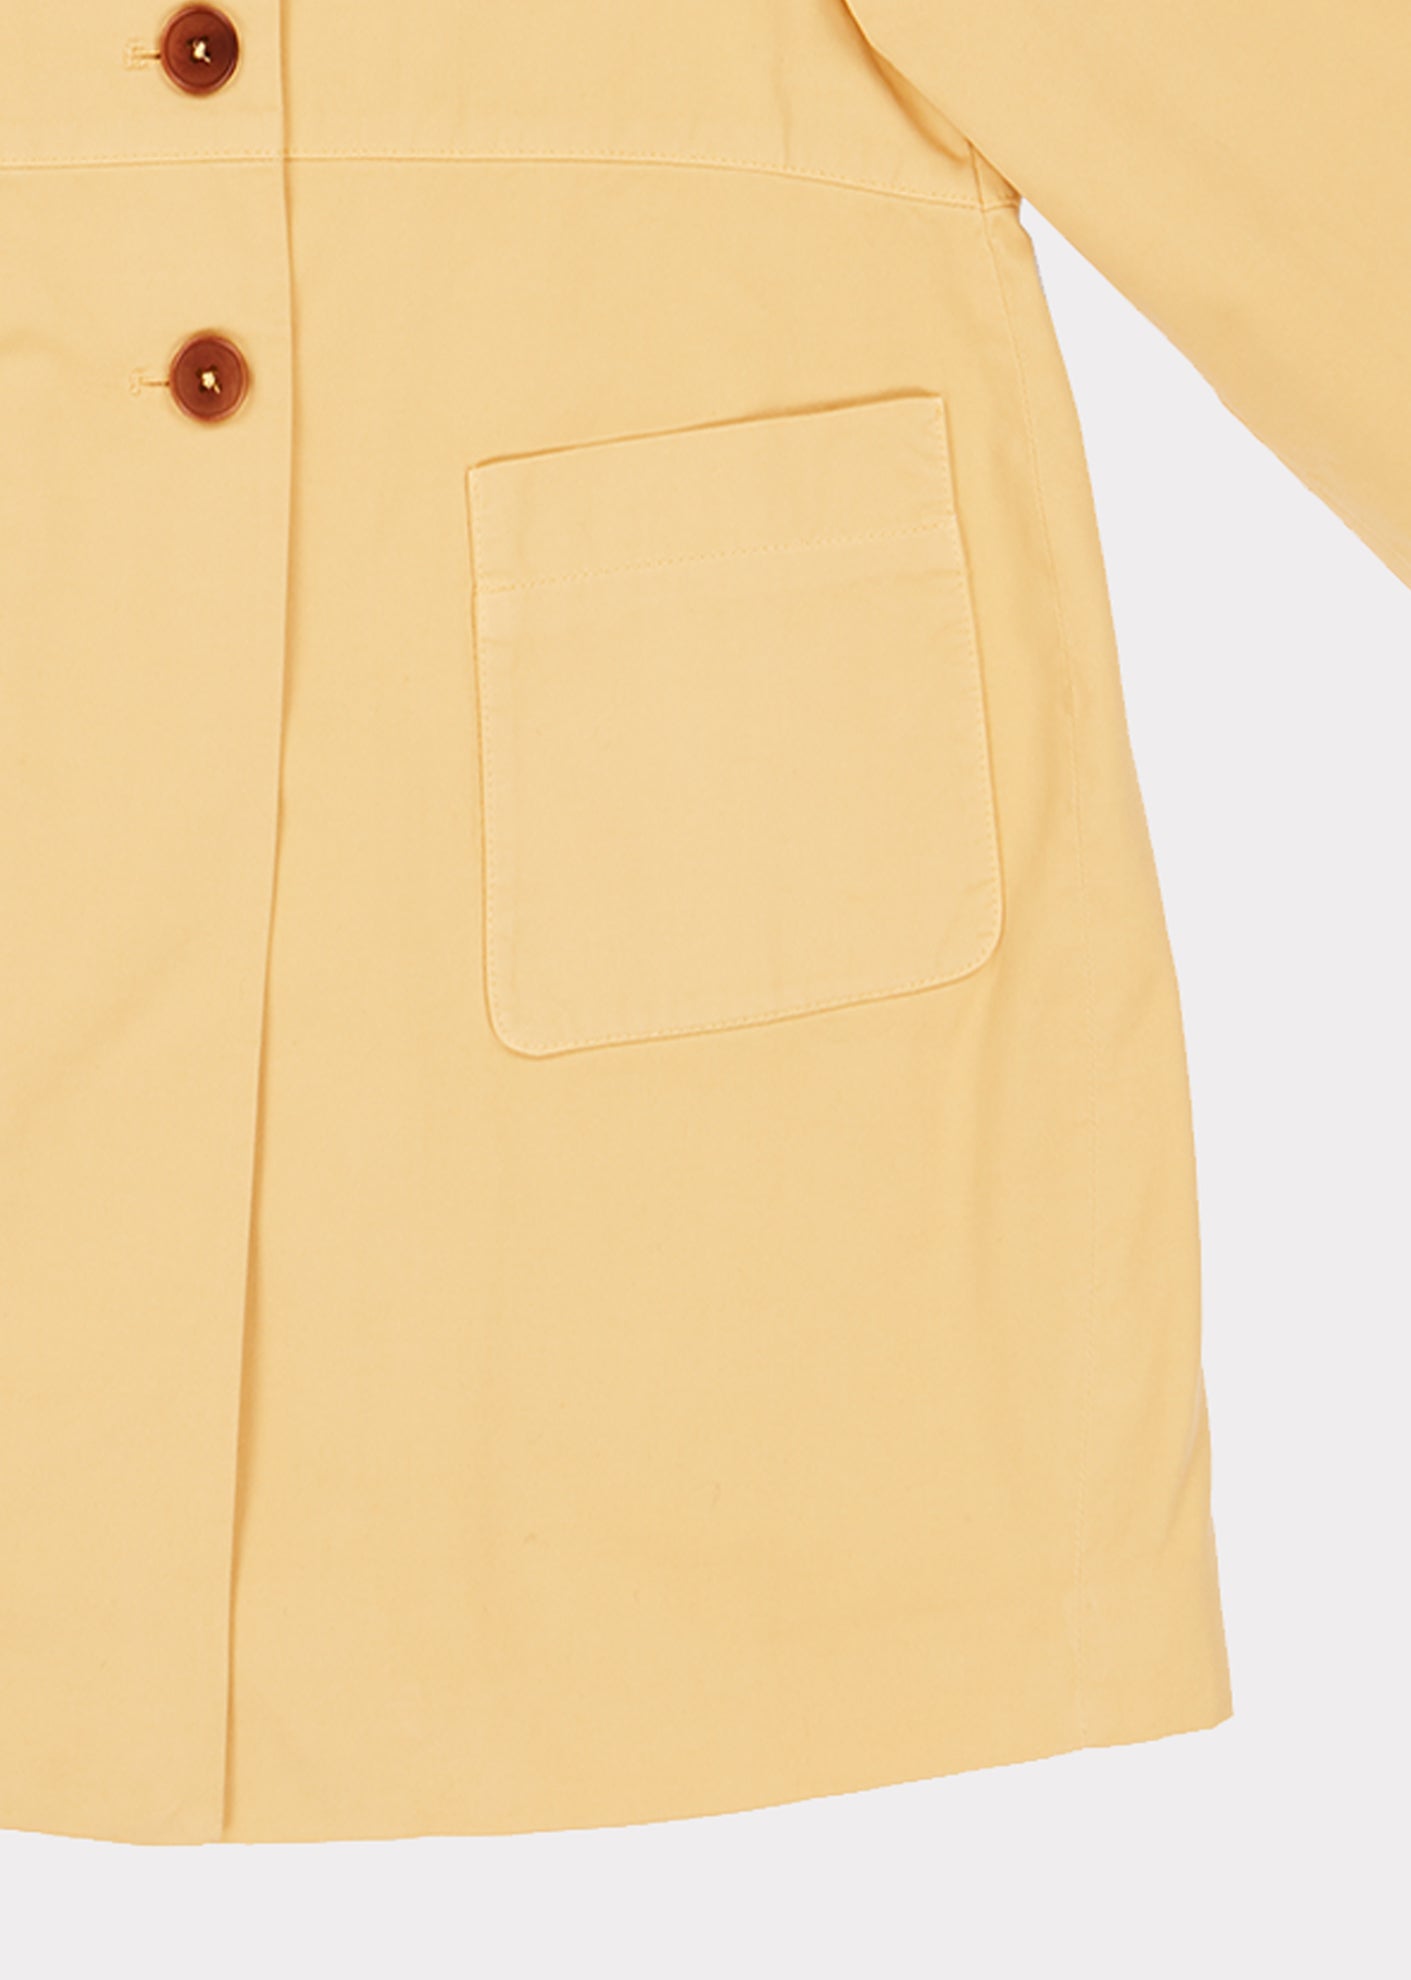 Girls Yellow Coat